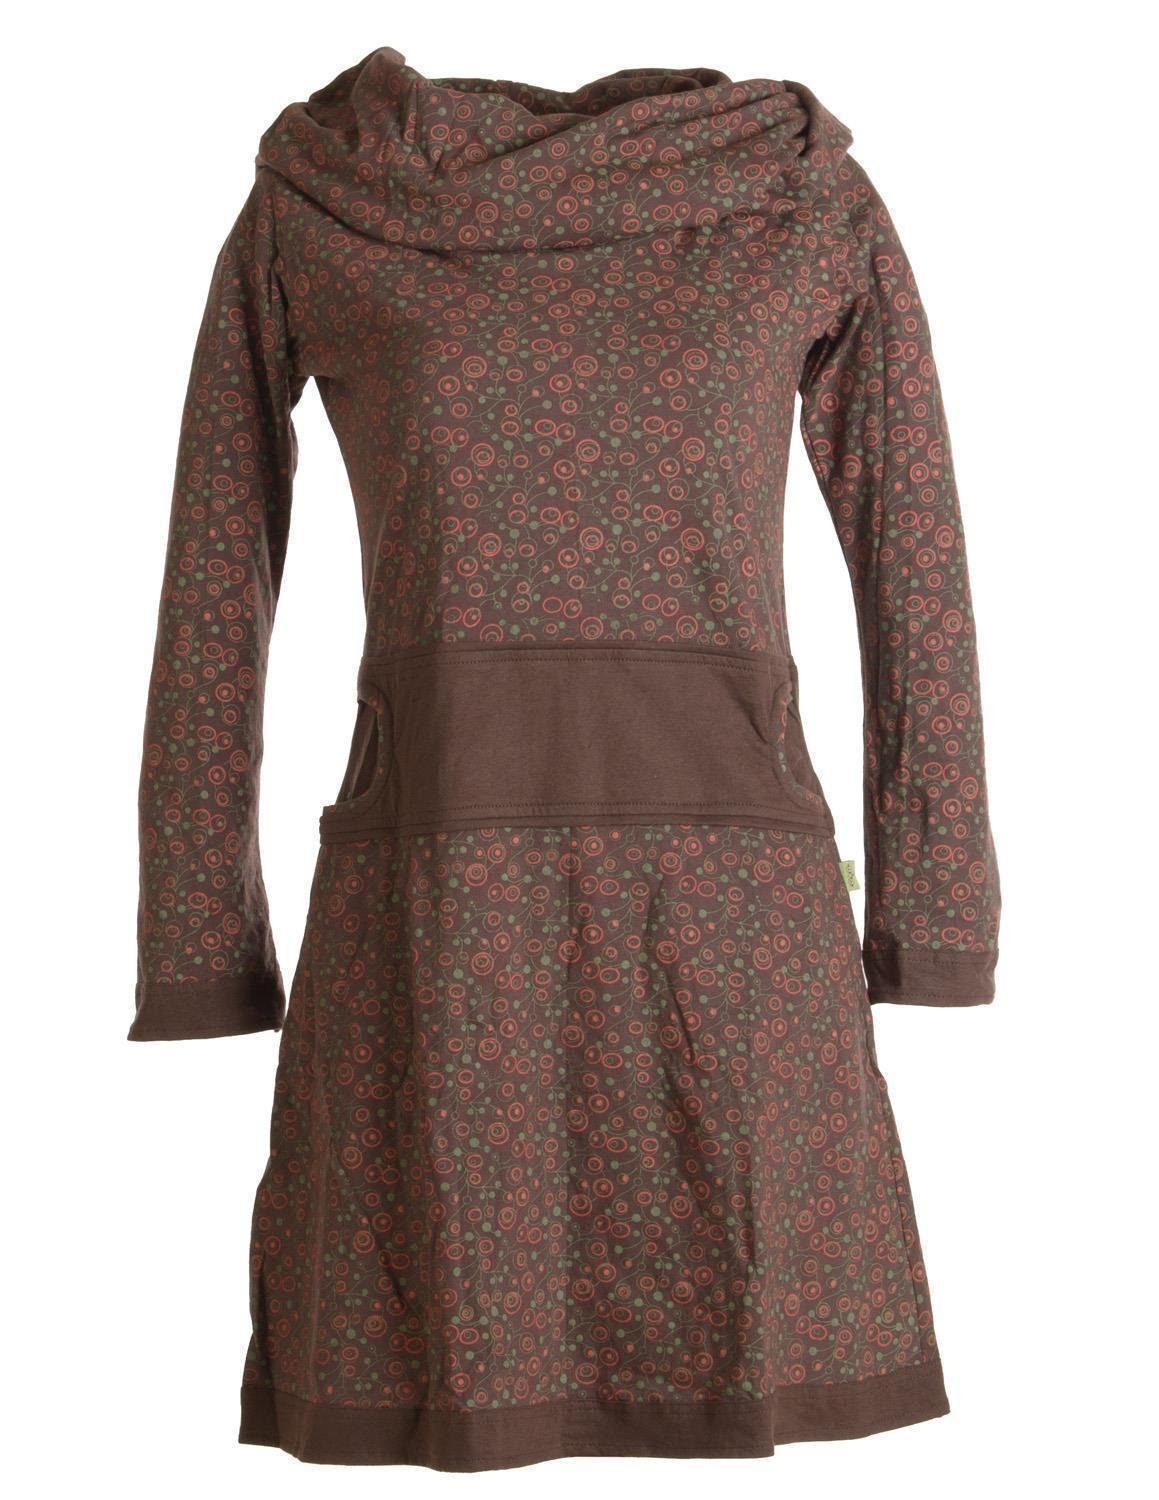 Vishes Jerseykleid Bedrucktes Kleid aus Baumwolle mit Schalkragen Ethno, Goa, Boho, Hippie Style dunkelbraun